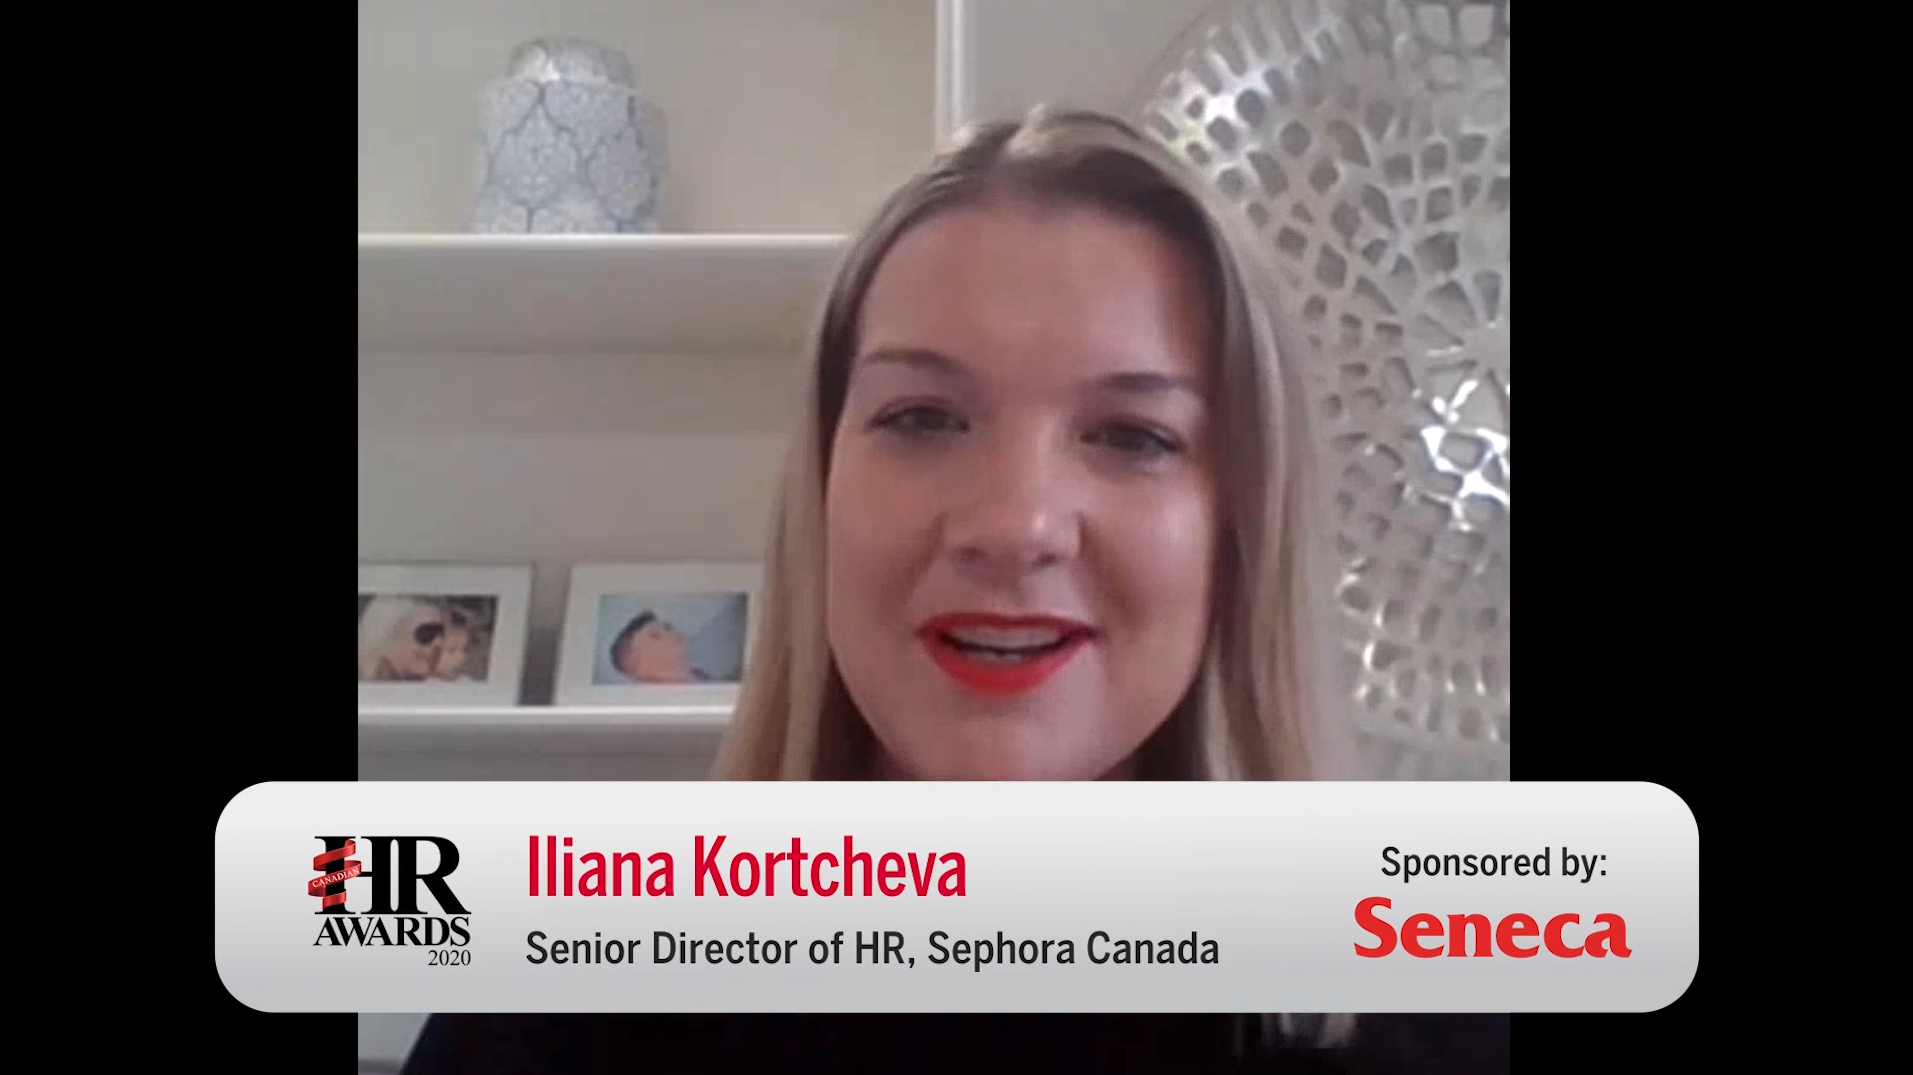 Video interview: Iliana Kortcheva, Senior Director HR at Sephora